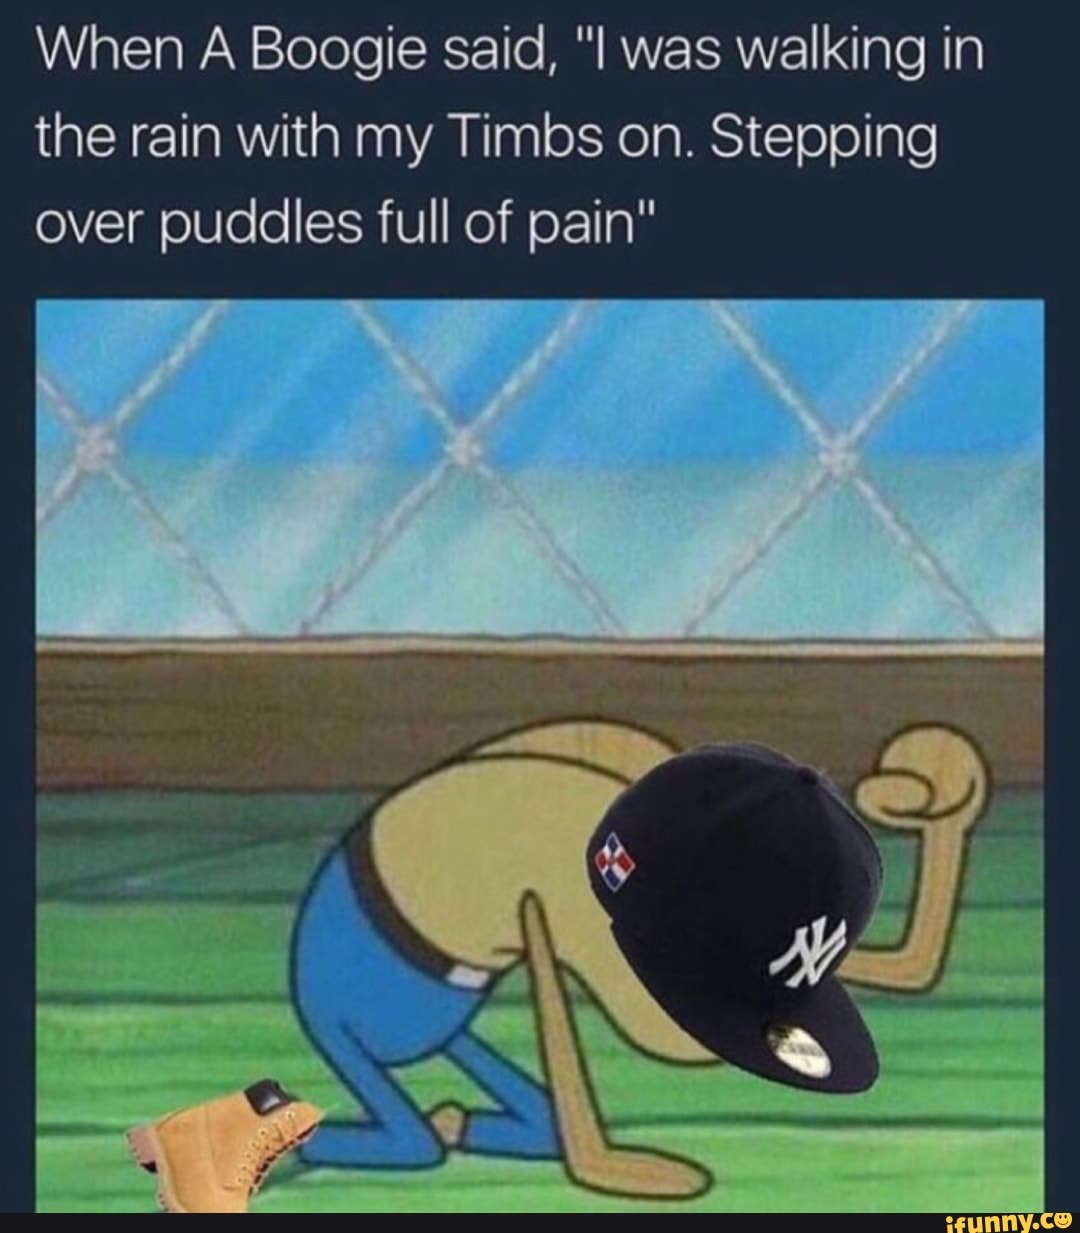 timbs in the rain